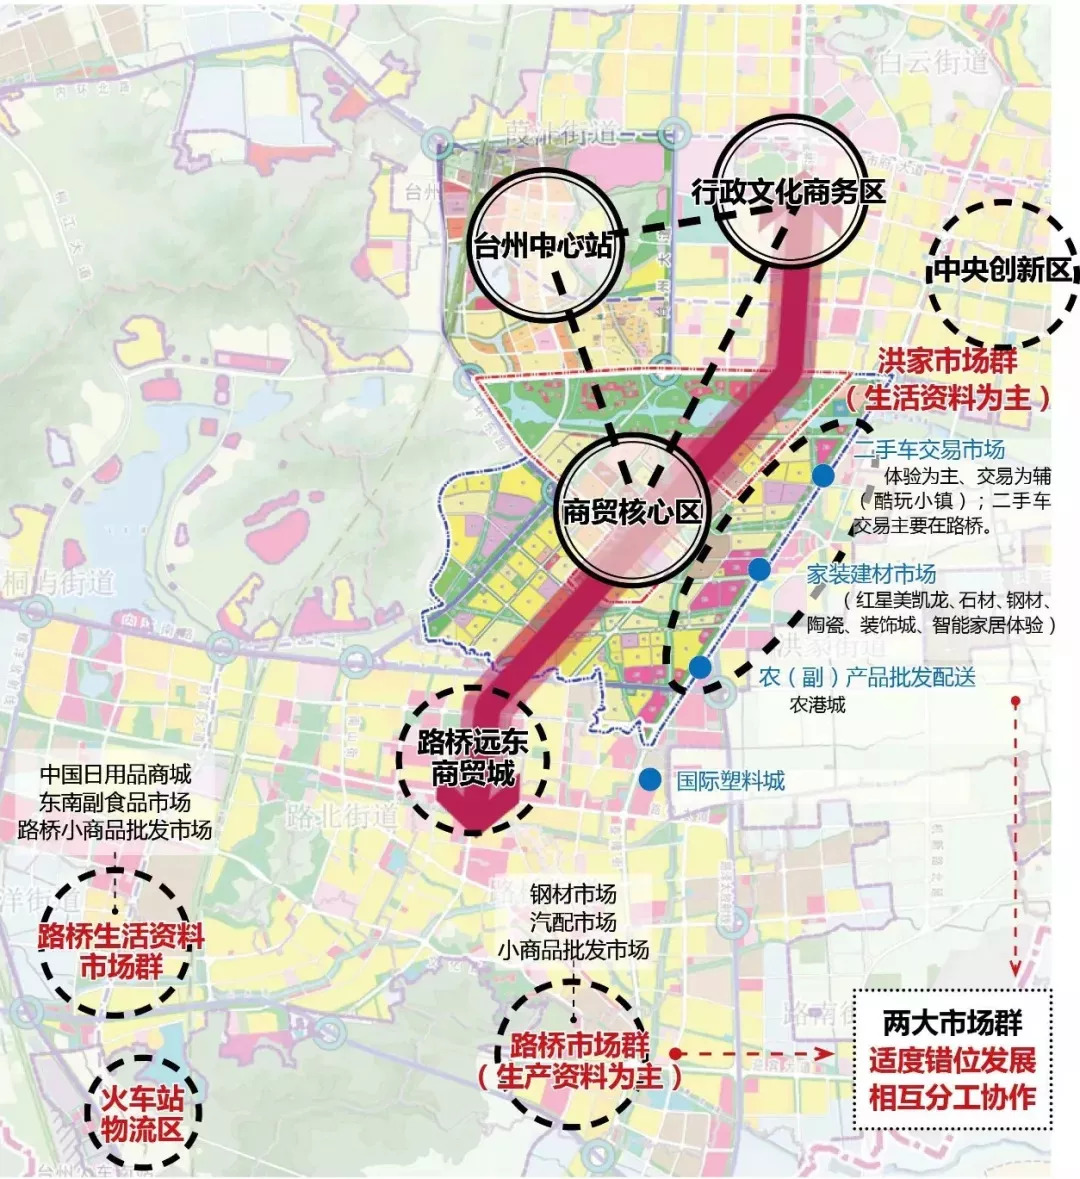 一个名叫"台州商贸核心区"的城市规划,早在数年前已经在这片土地上